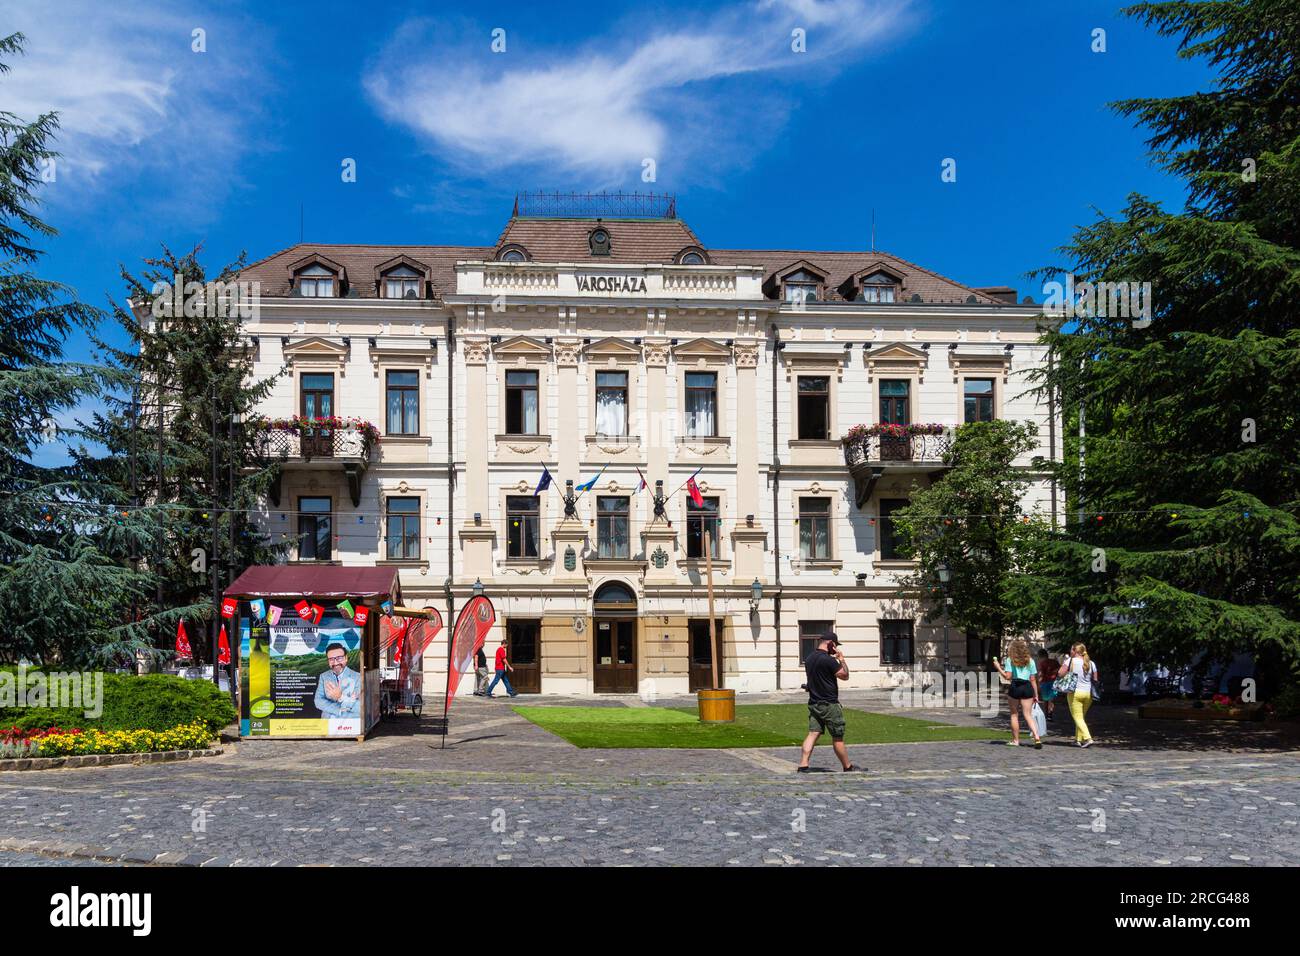 Varoshaza (Hôtel de ville) Construit en 1857 dans un style romantique, quartier du château, Veszprem, Hongrie Banque D'Images